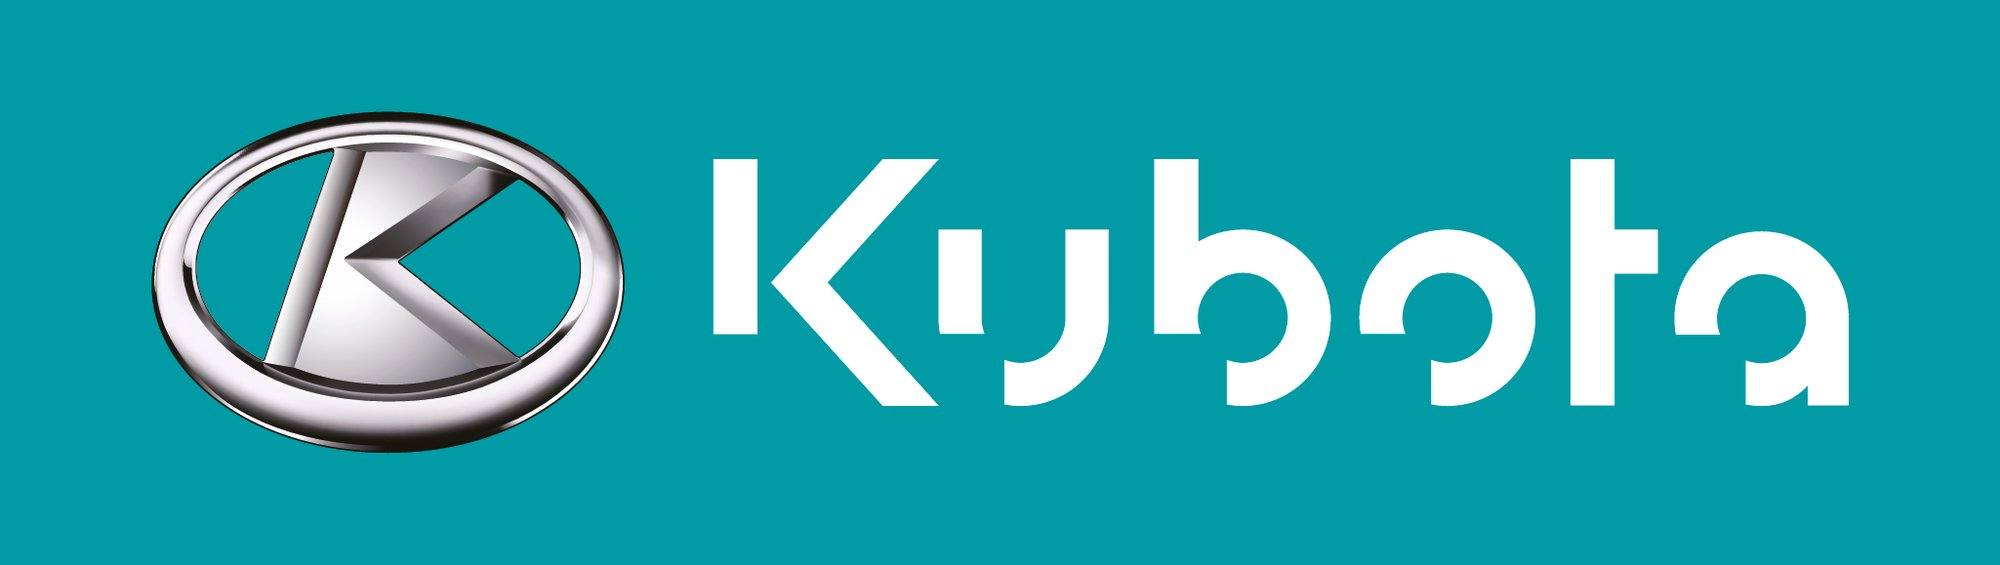 Kubota logo construction UPDATED